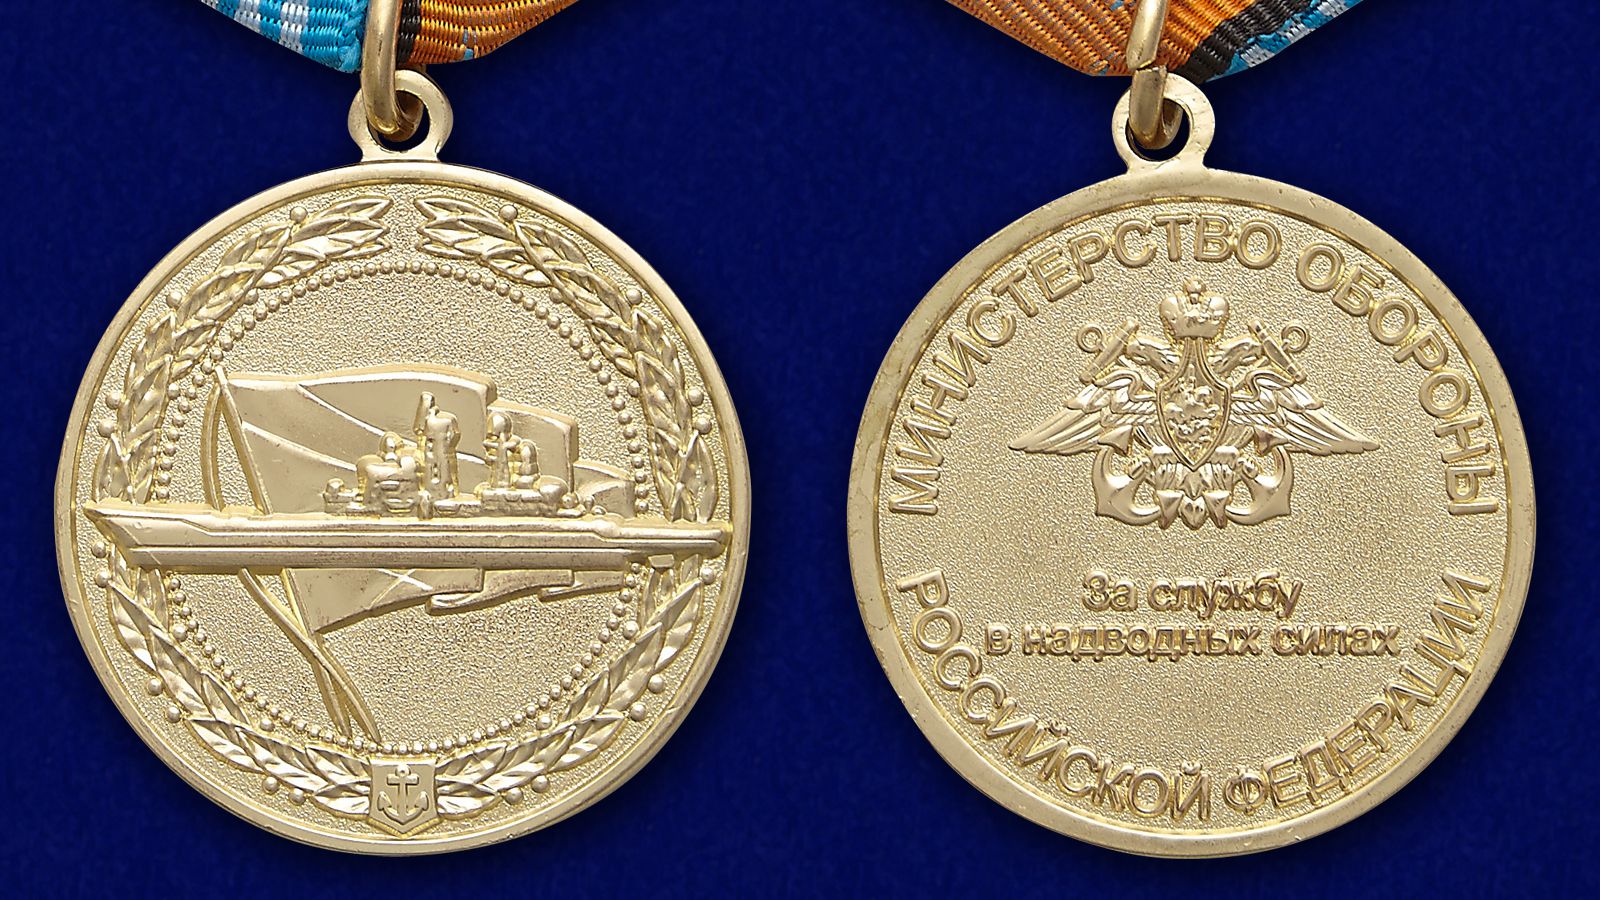 Медаль ВМФ РФ "За службу в надводных силах" в красивом футляре из флока 